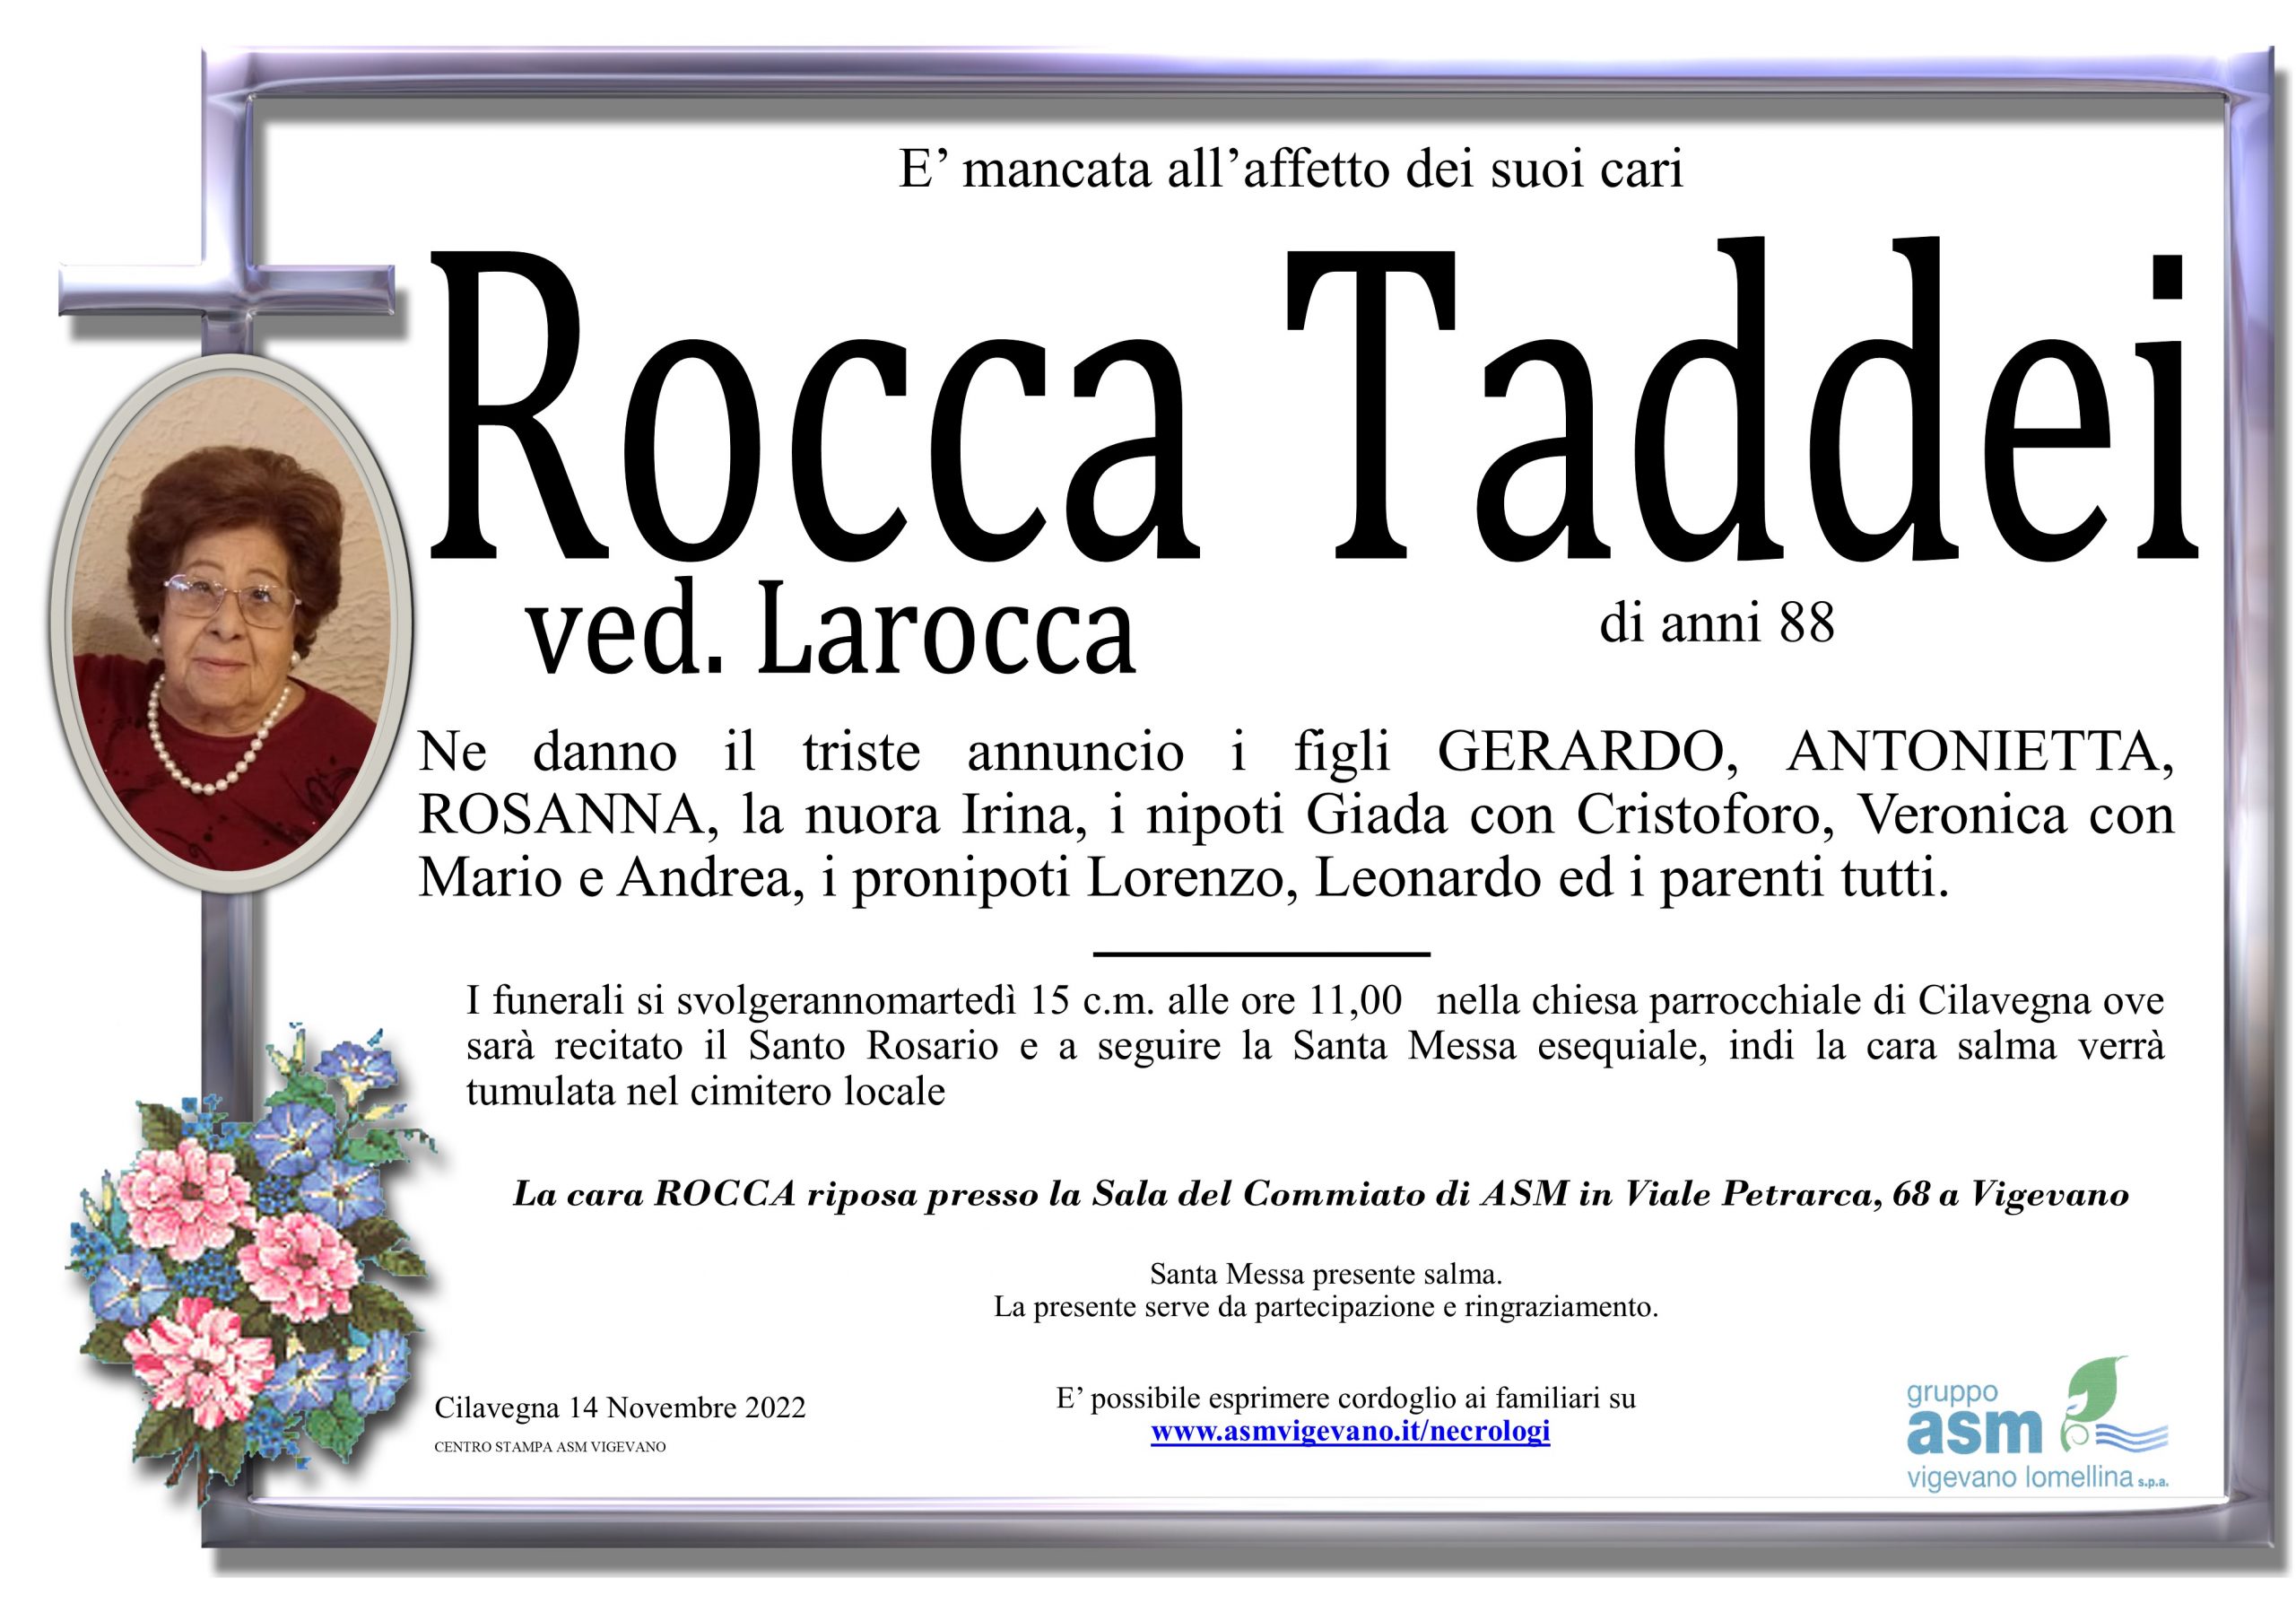 Rocca Taddei